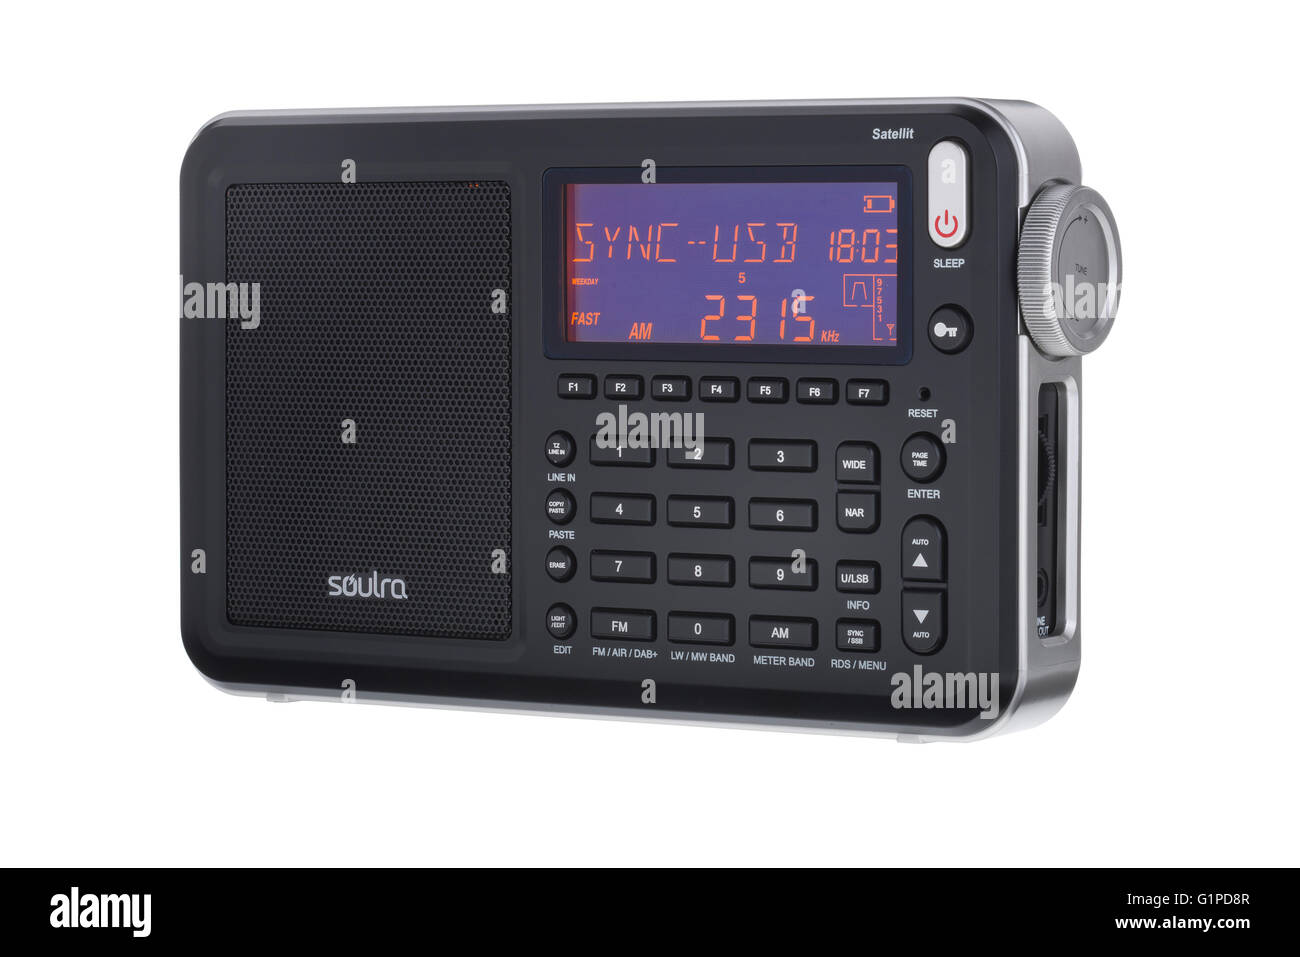 Soulra radio mondiale Satellit. Ondes longues, ondes courtes, AM, FM et DAB récepteur radio portable. Banque D'Images